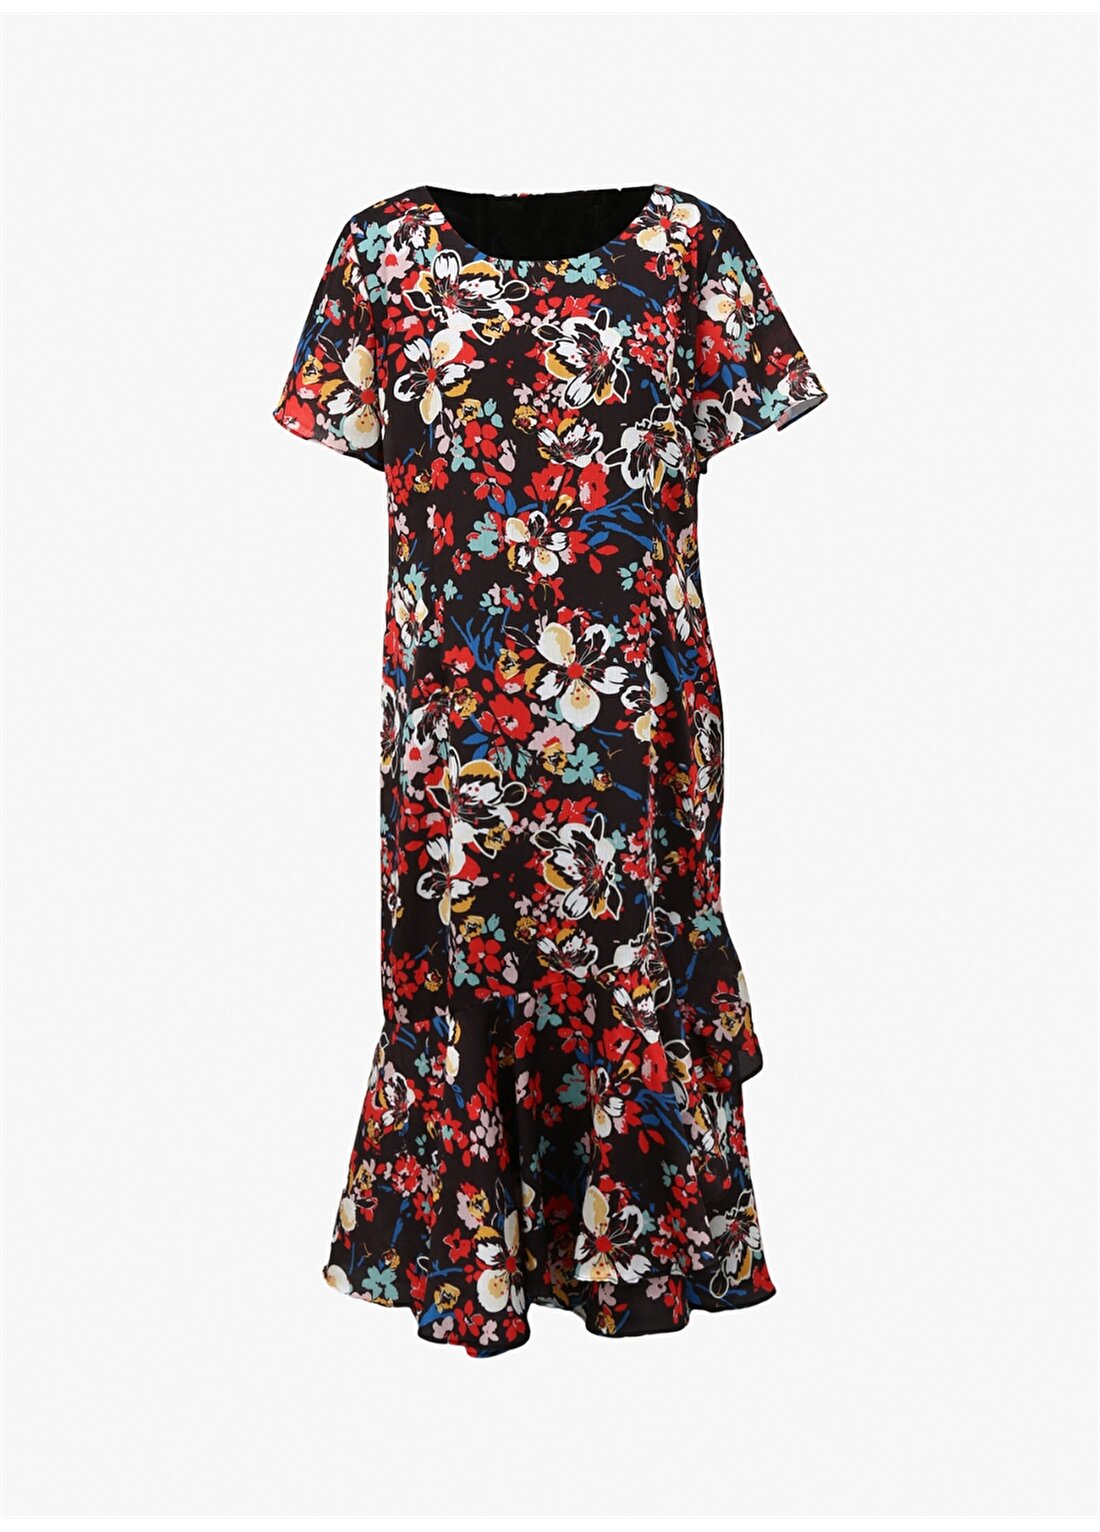 Selen O Yaka Çiçek Desenli Çok Renkli Standart Kadın Elbise 24YSL7427-BB